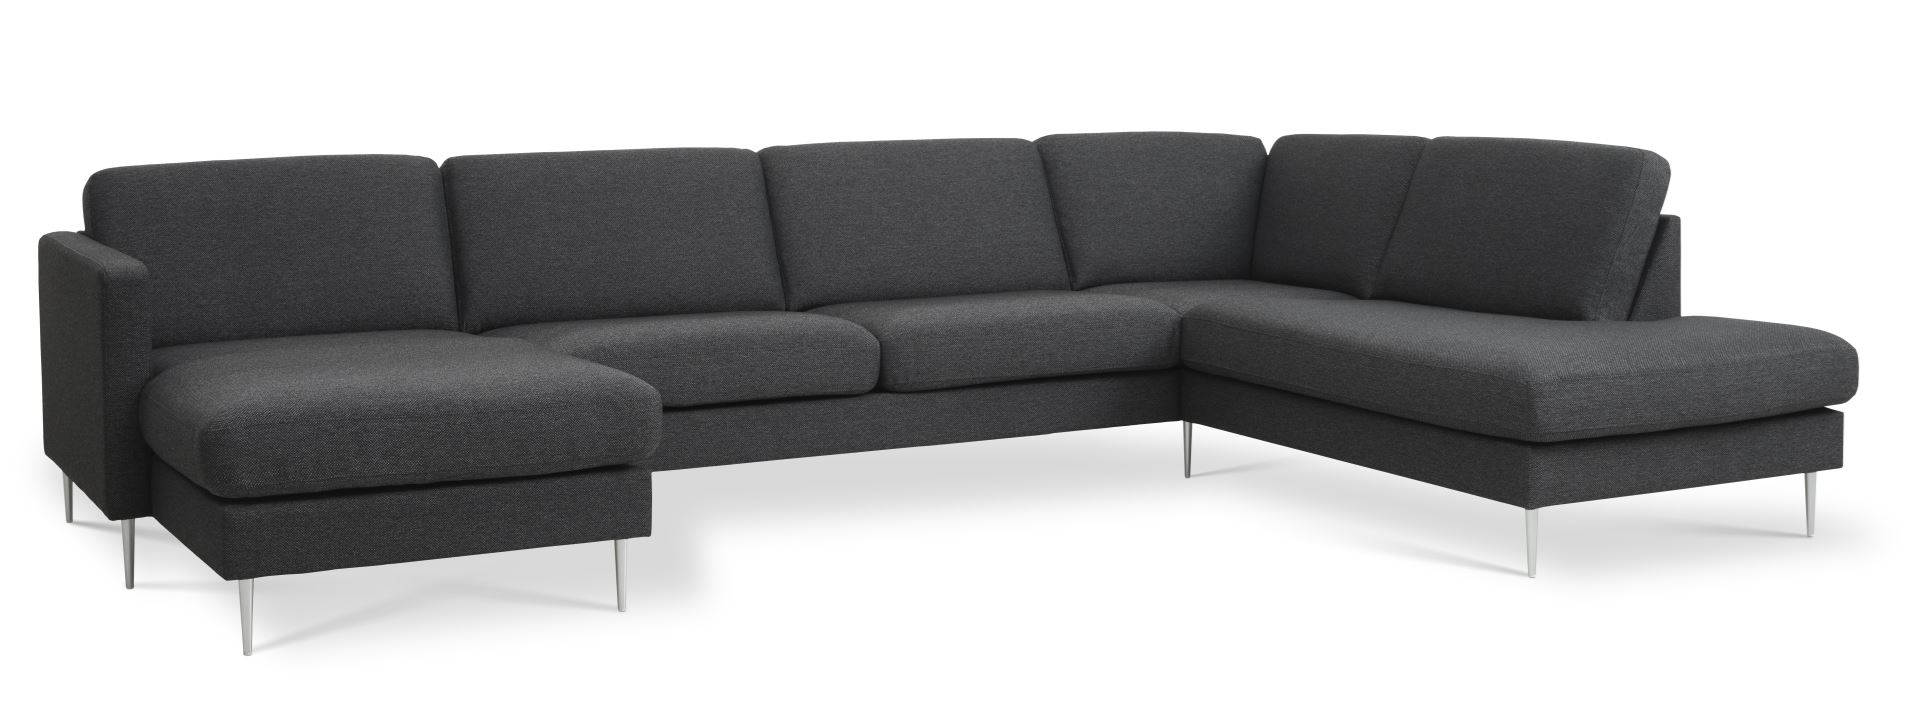 Ask sæt 55 U OE sofa, m. højre chaiselong - antracitgrå polyester stof og børstet aluminium